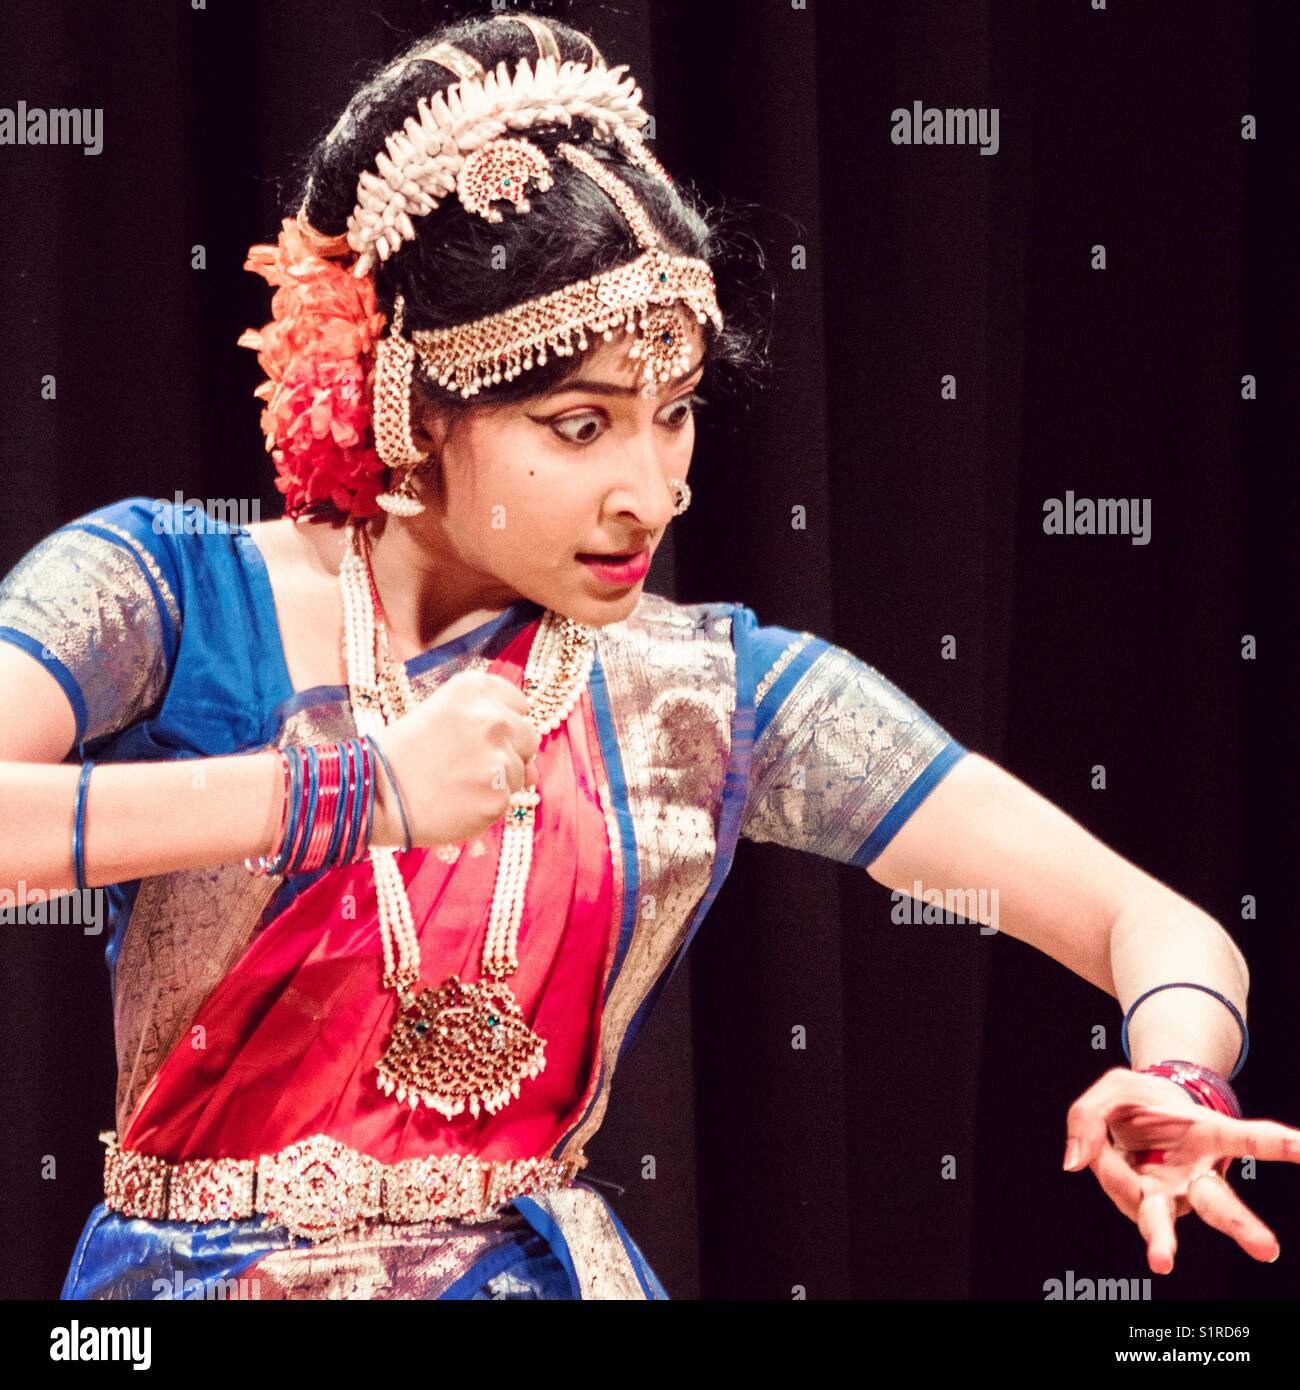 Une danseuse indienne de l'exécution d'une danse traditionnelle indienne appelée kuchipudi Banque D'Images